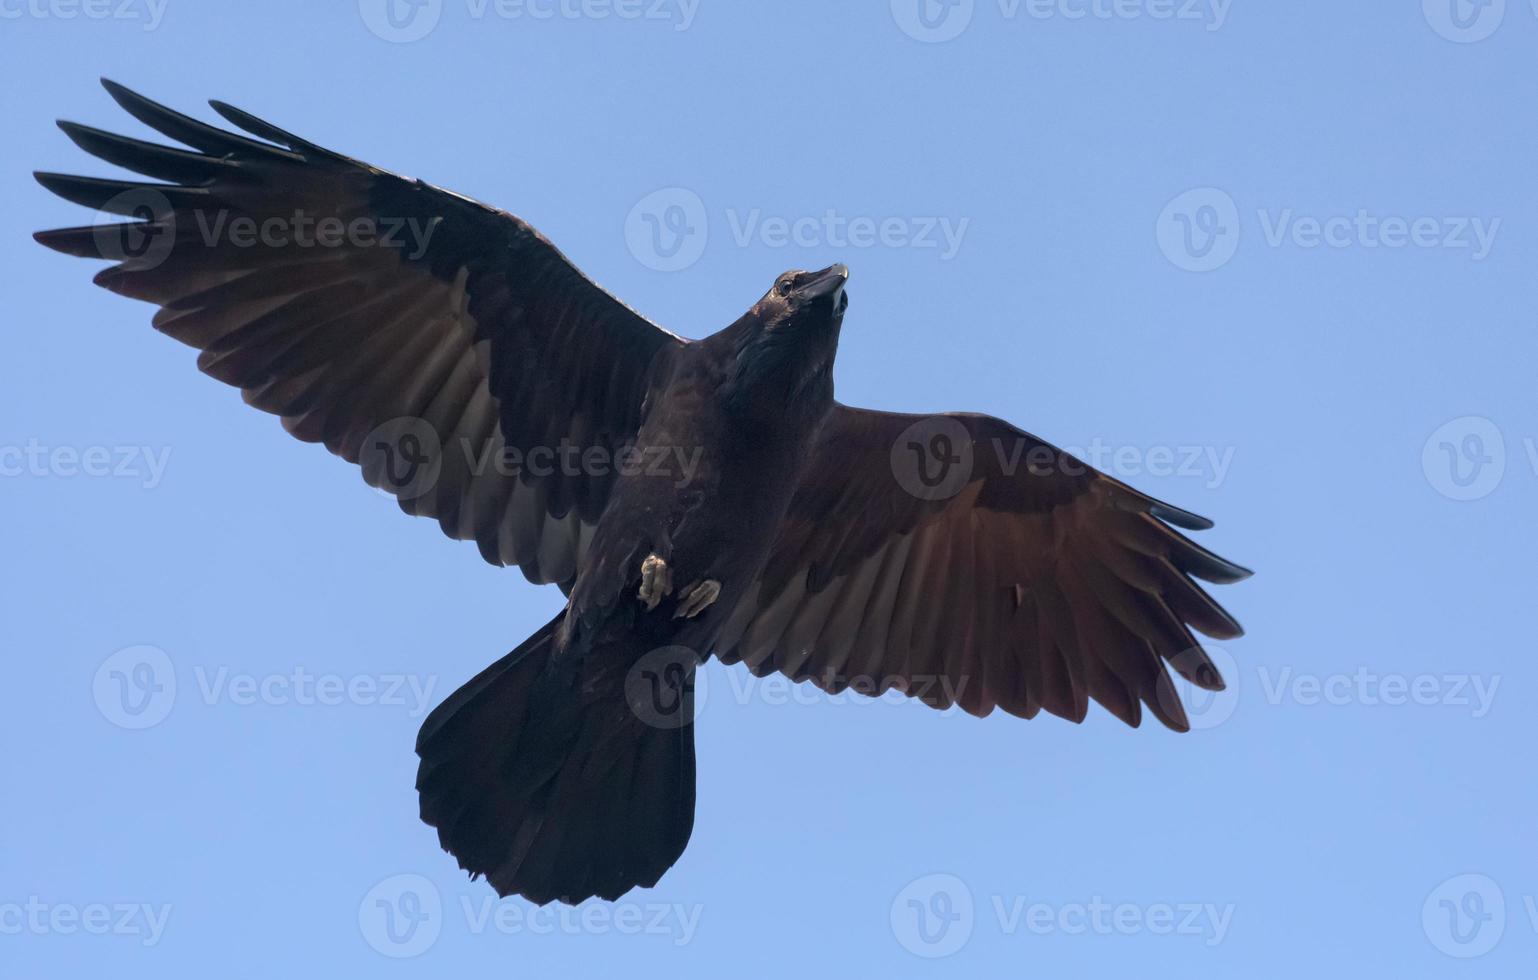 volwassen gemeenschappelijk raaf - corvus corax - zweeft in blauw lucht met uitgerekt Vleugels en staart foto